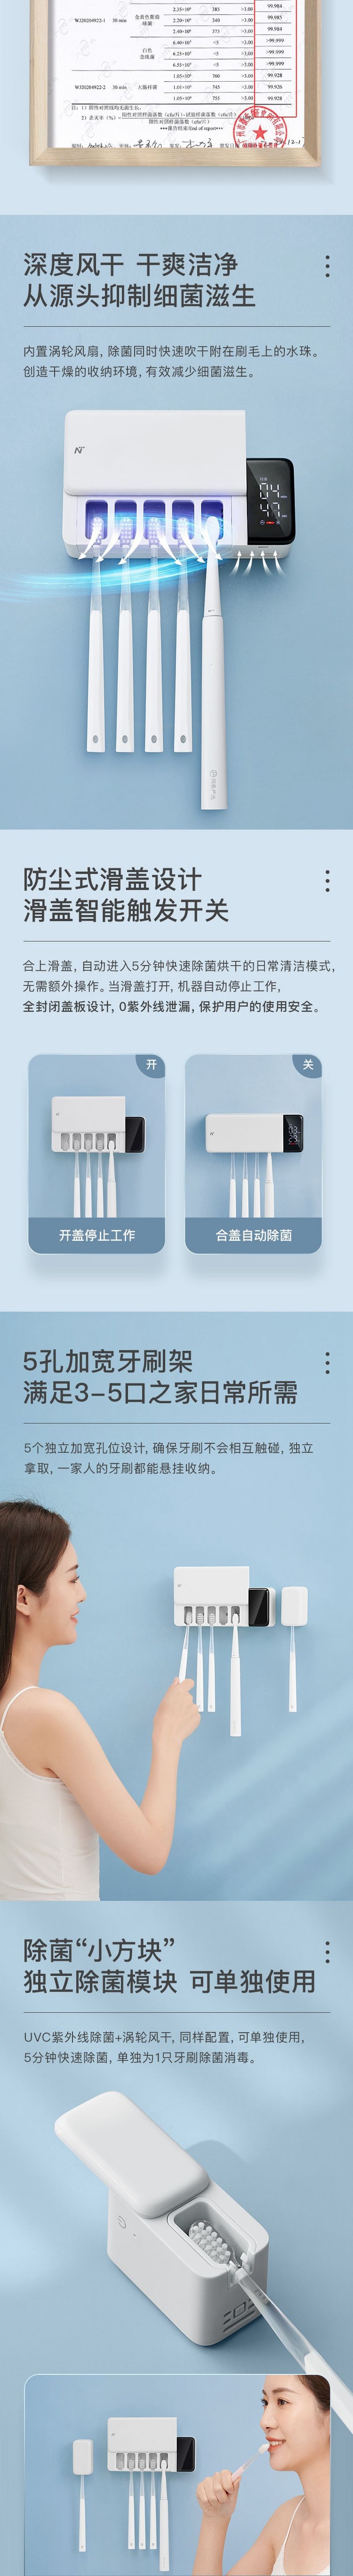 UV sterilization storage toothbrush holder Sterilization Set [5-7 Days U.S. Free Shipping]